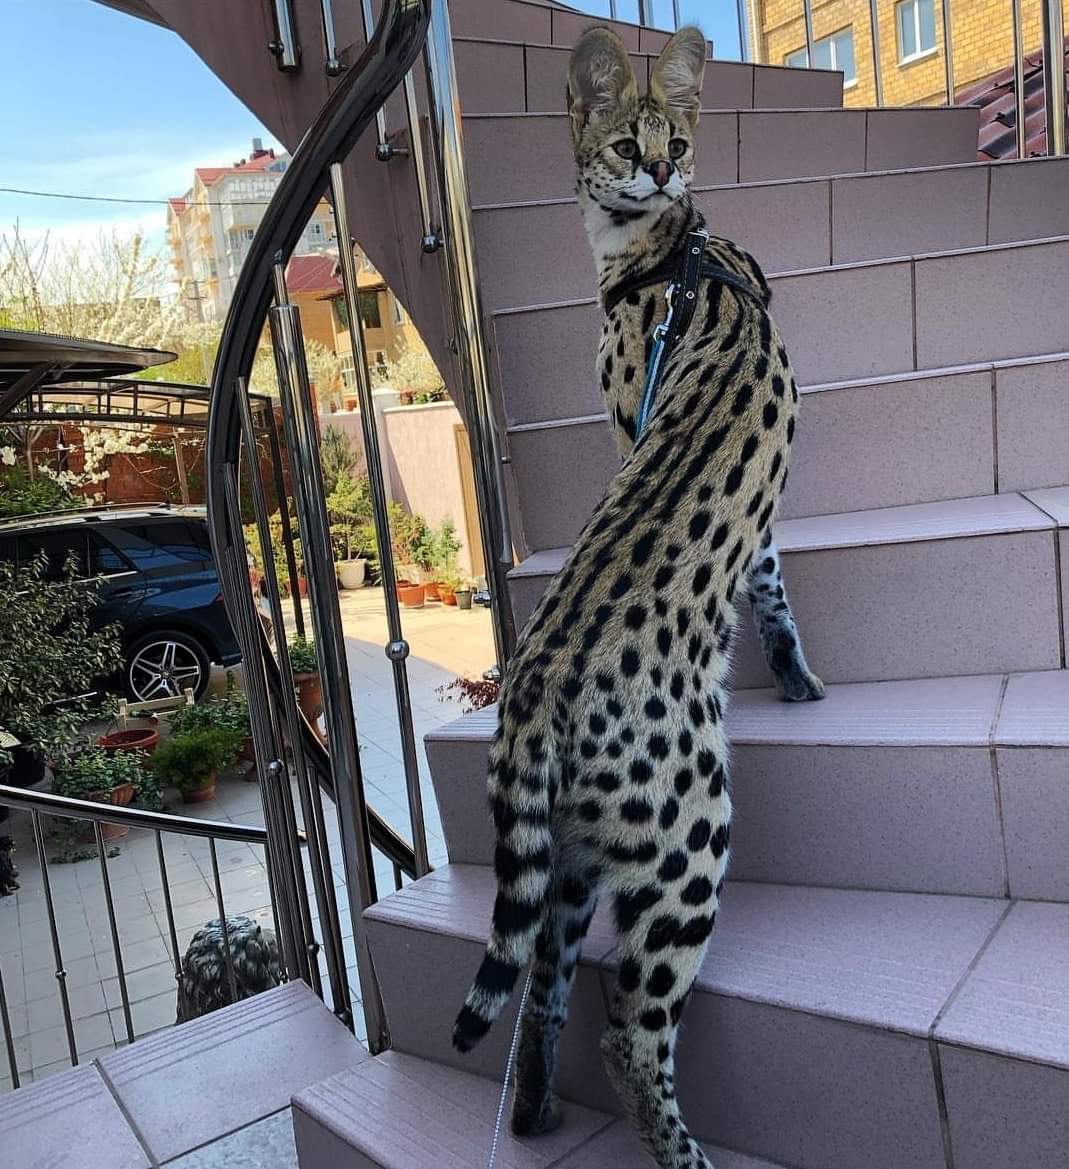 A pet serval cat